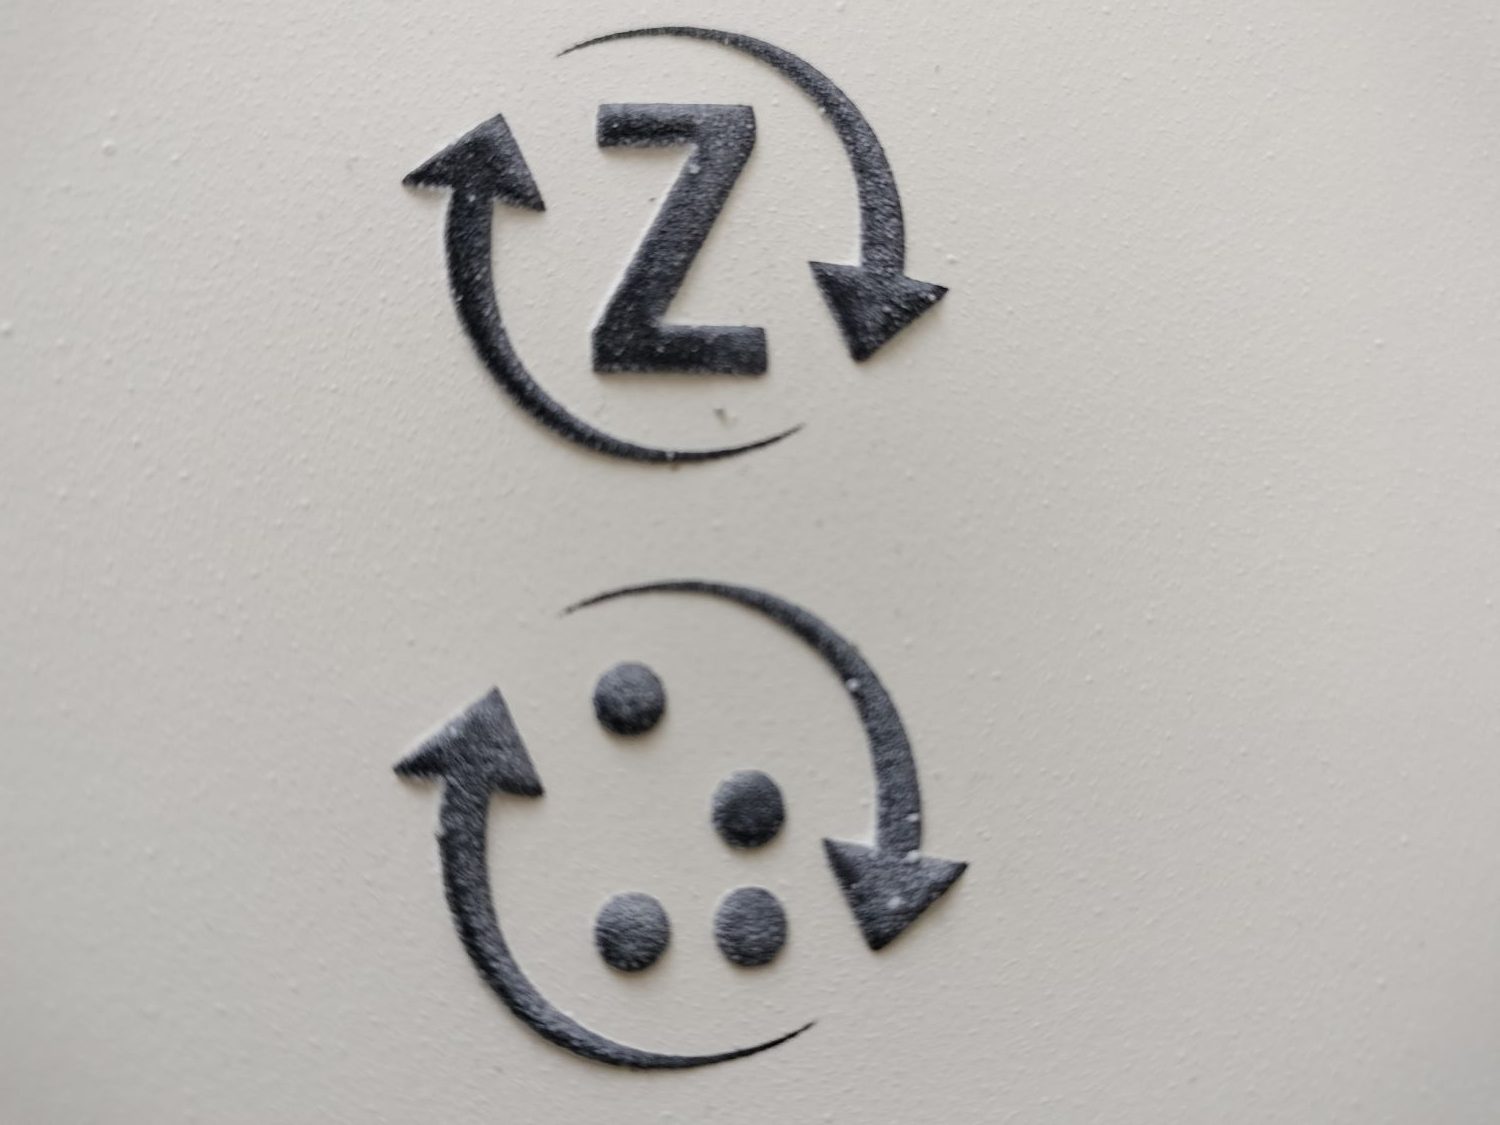 Reliéfny piktogram vratnej fľaše vo verzii s latinkou a brailom. Piktogram sa skladá z dvoch šípot, ktoré sú v smere hodinových ručičiek po obvode kruhu. Prvá siaha od cca 11 po cca 4. Druhá od cca 5 po cca 10. V strede kruhu je v prvom variante písmeno Z v latinke, v druhom variante v braili.